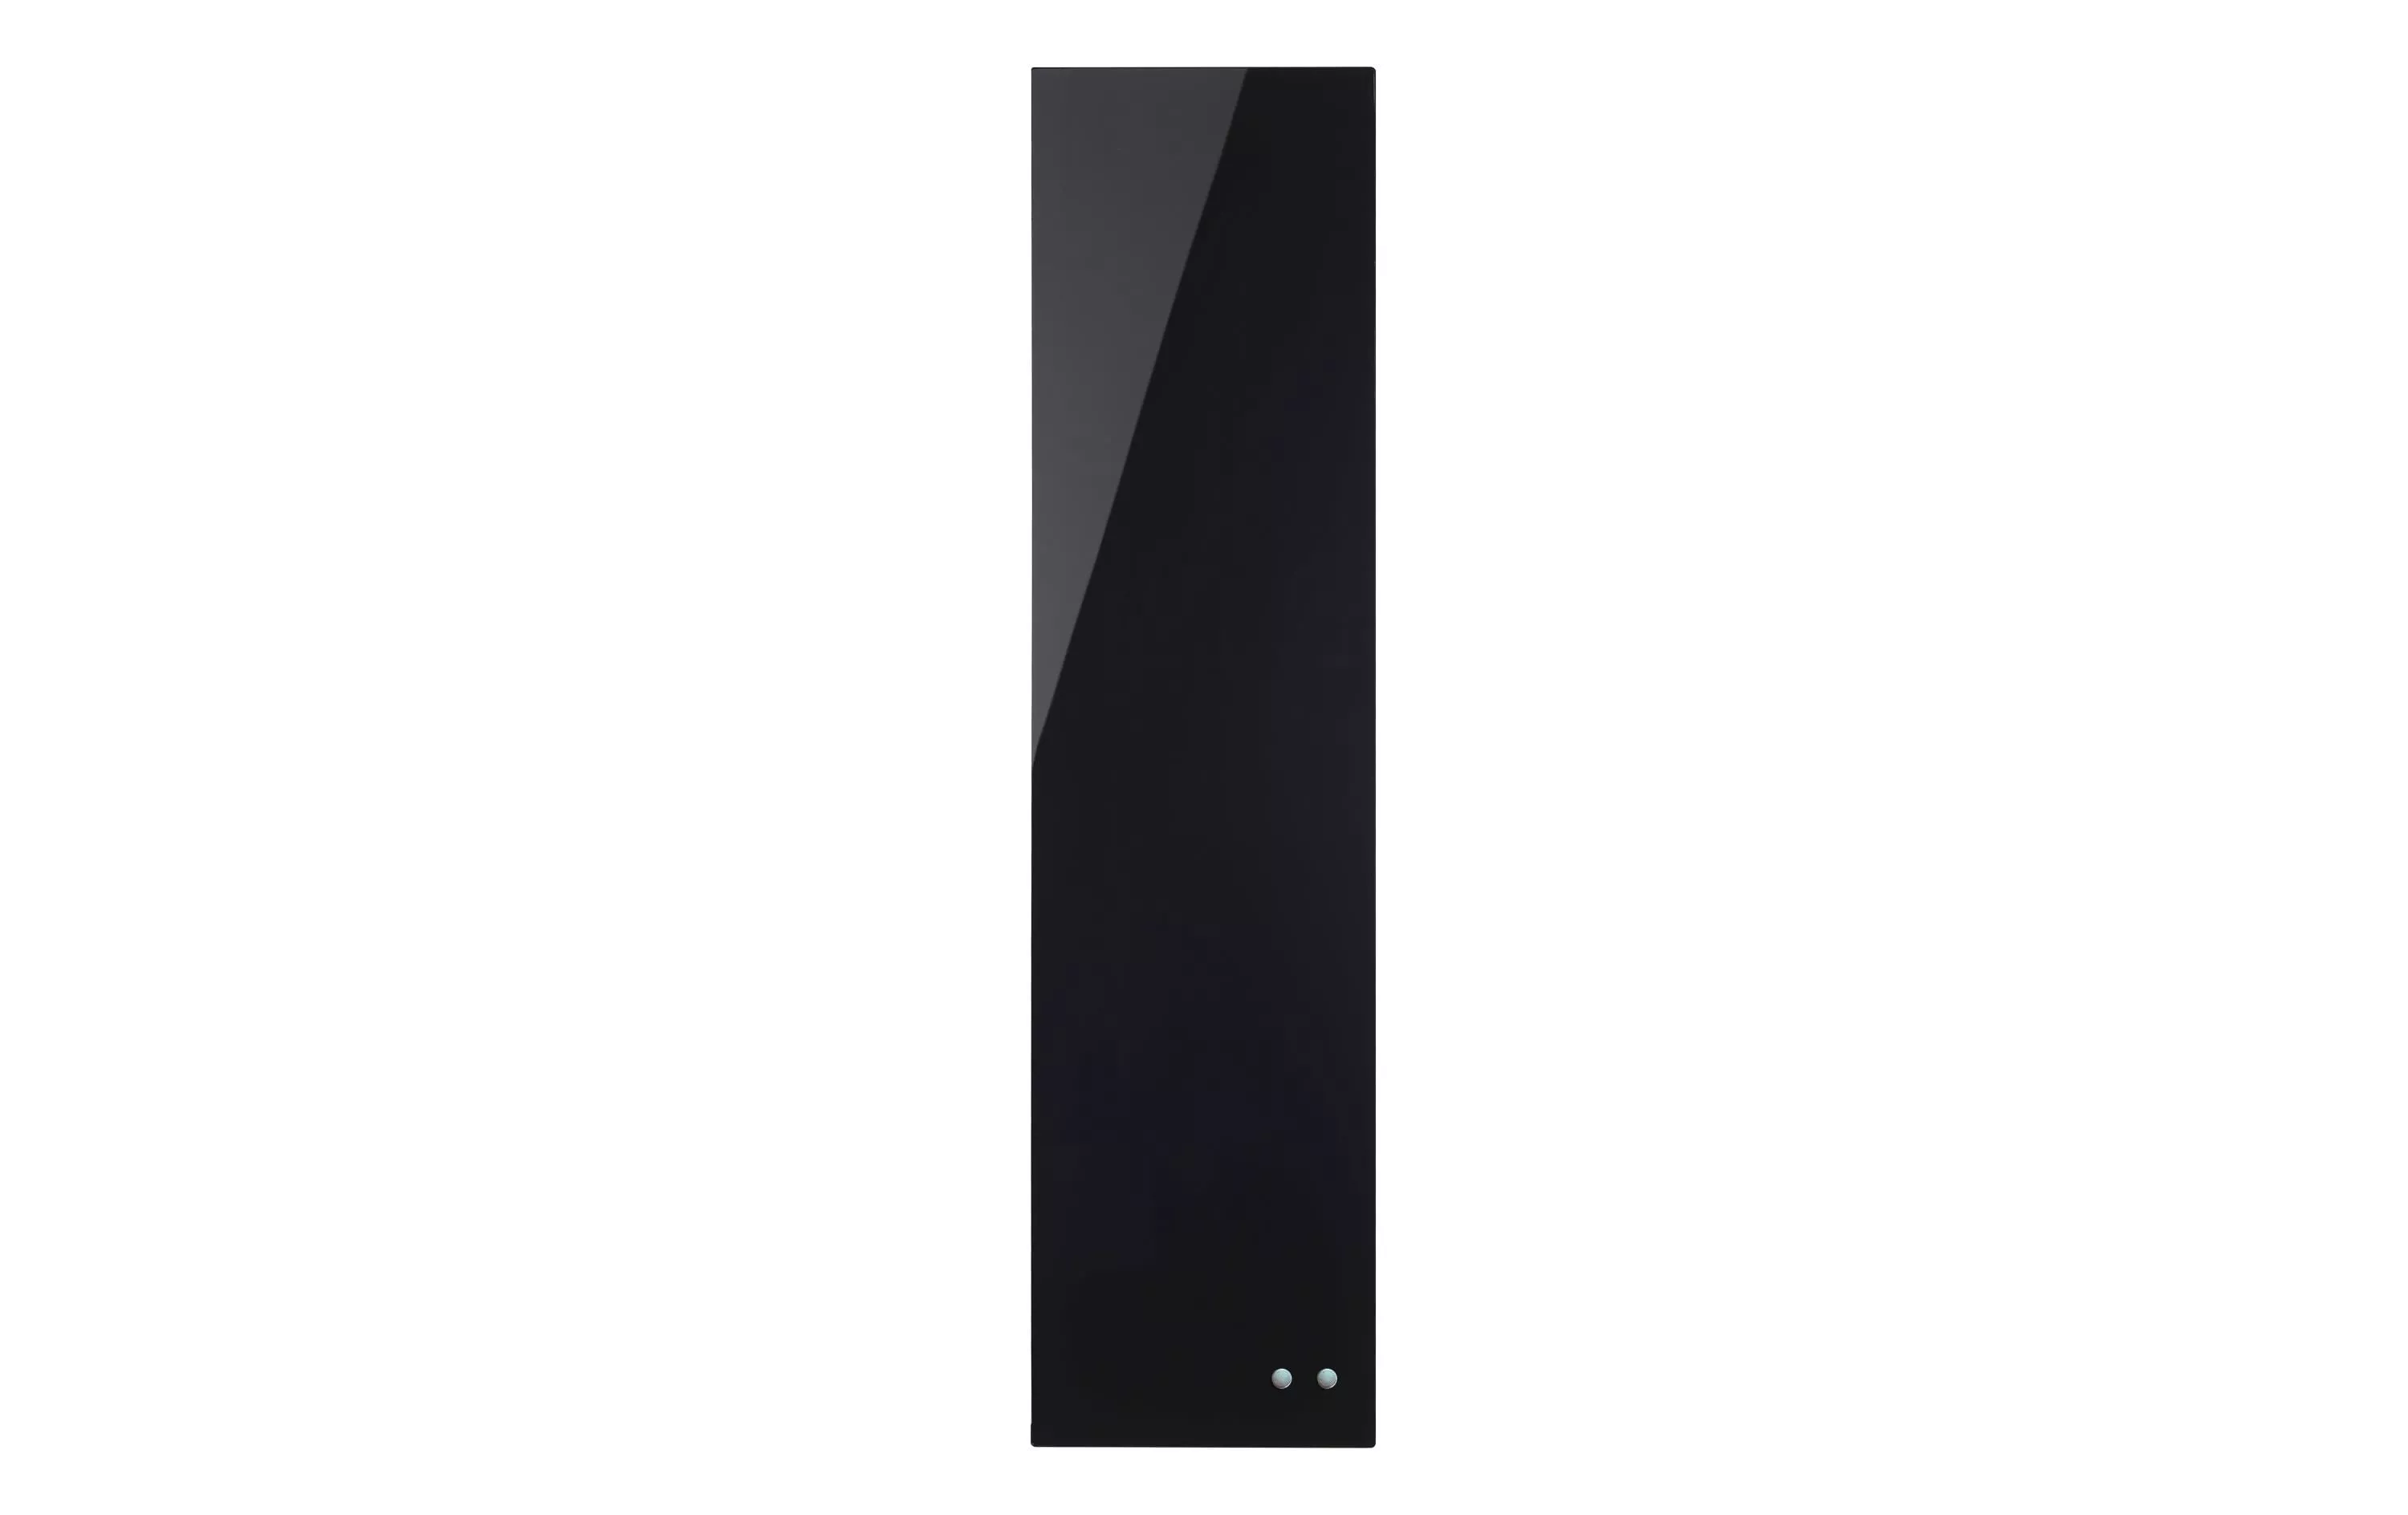 Magnethaftendes Glassboard 80 cm x 20 cm, Schwarz